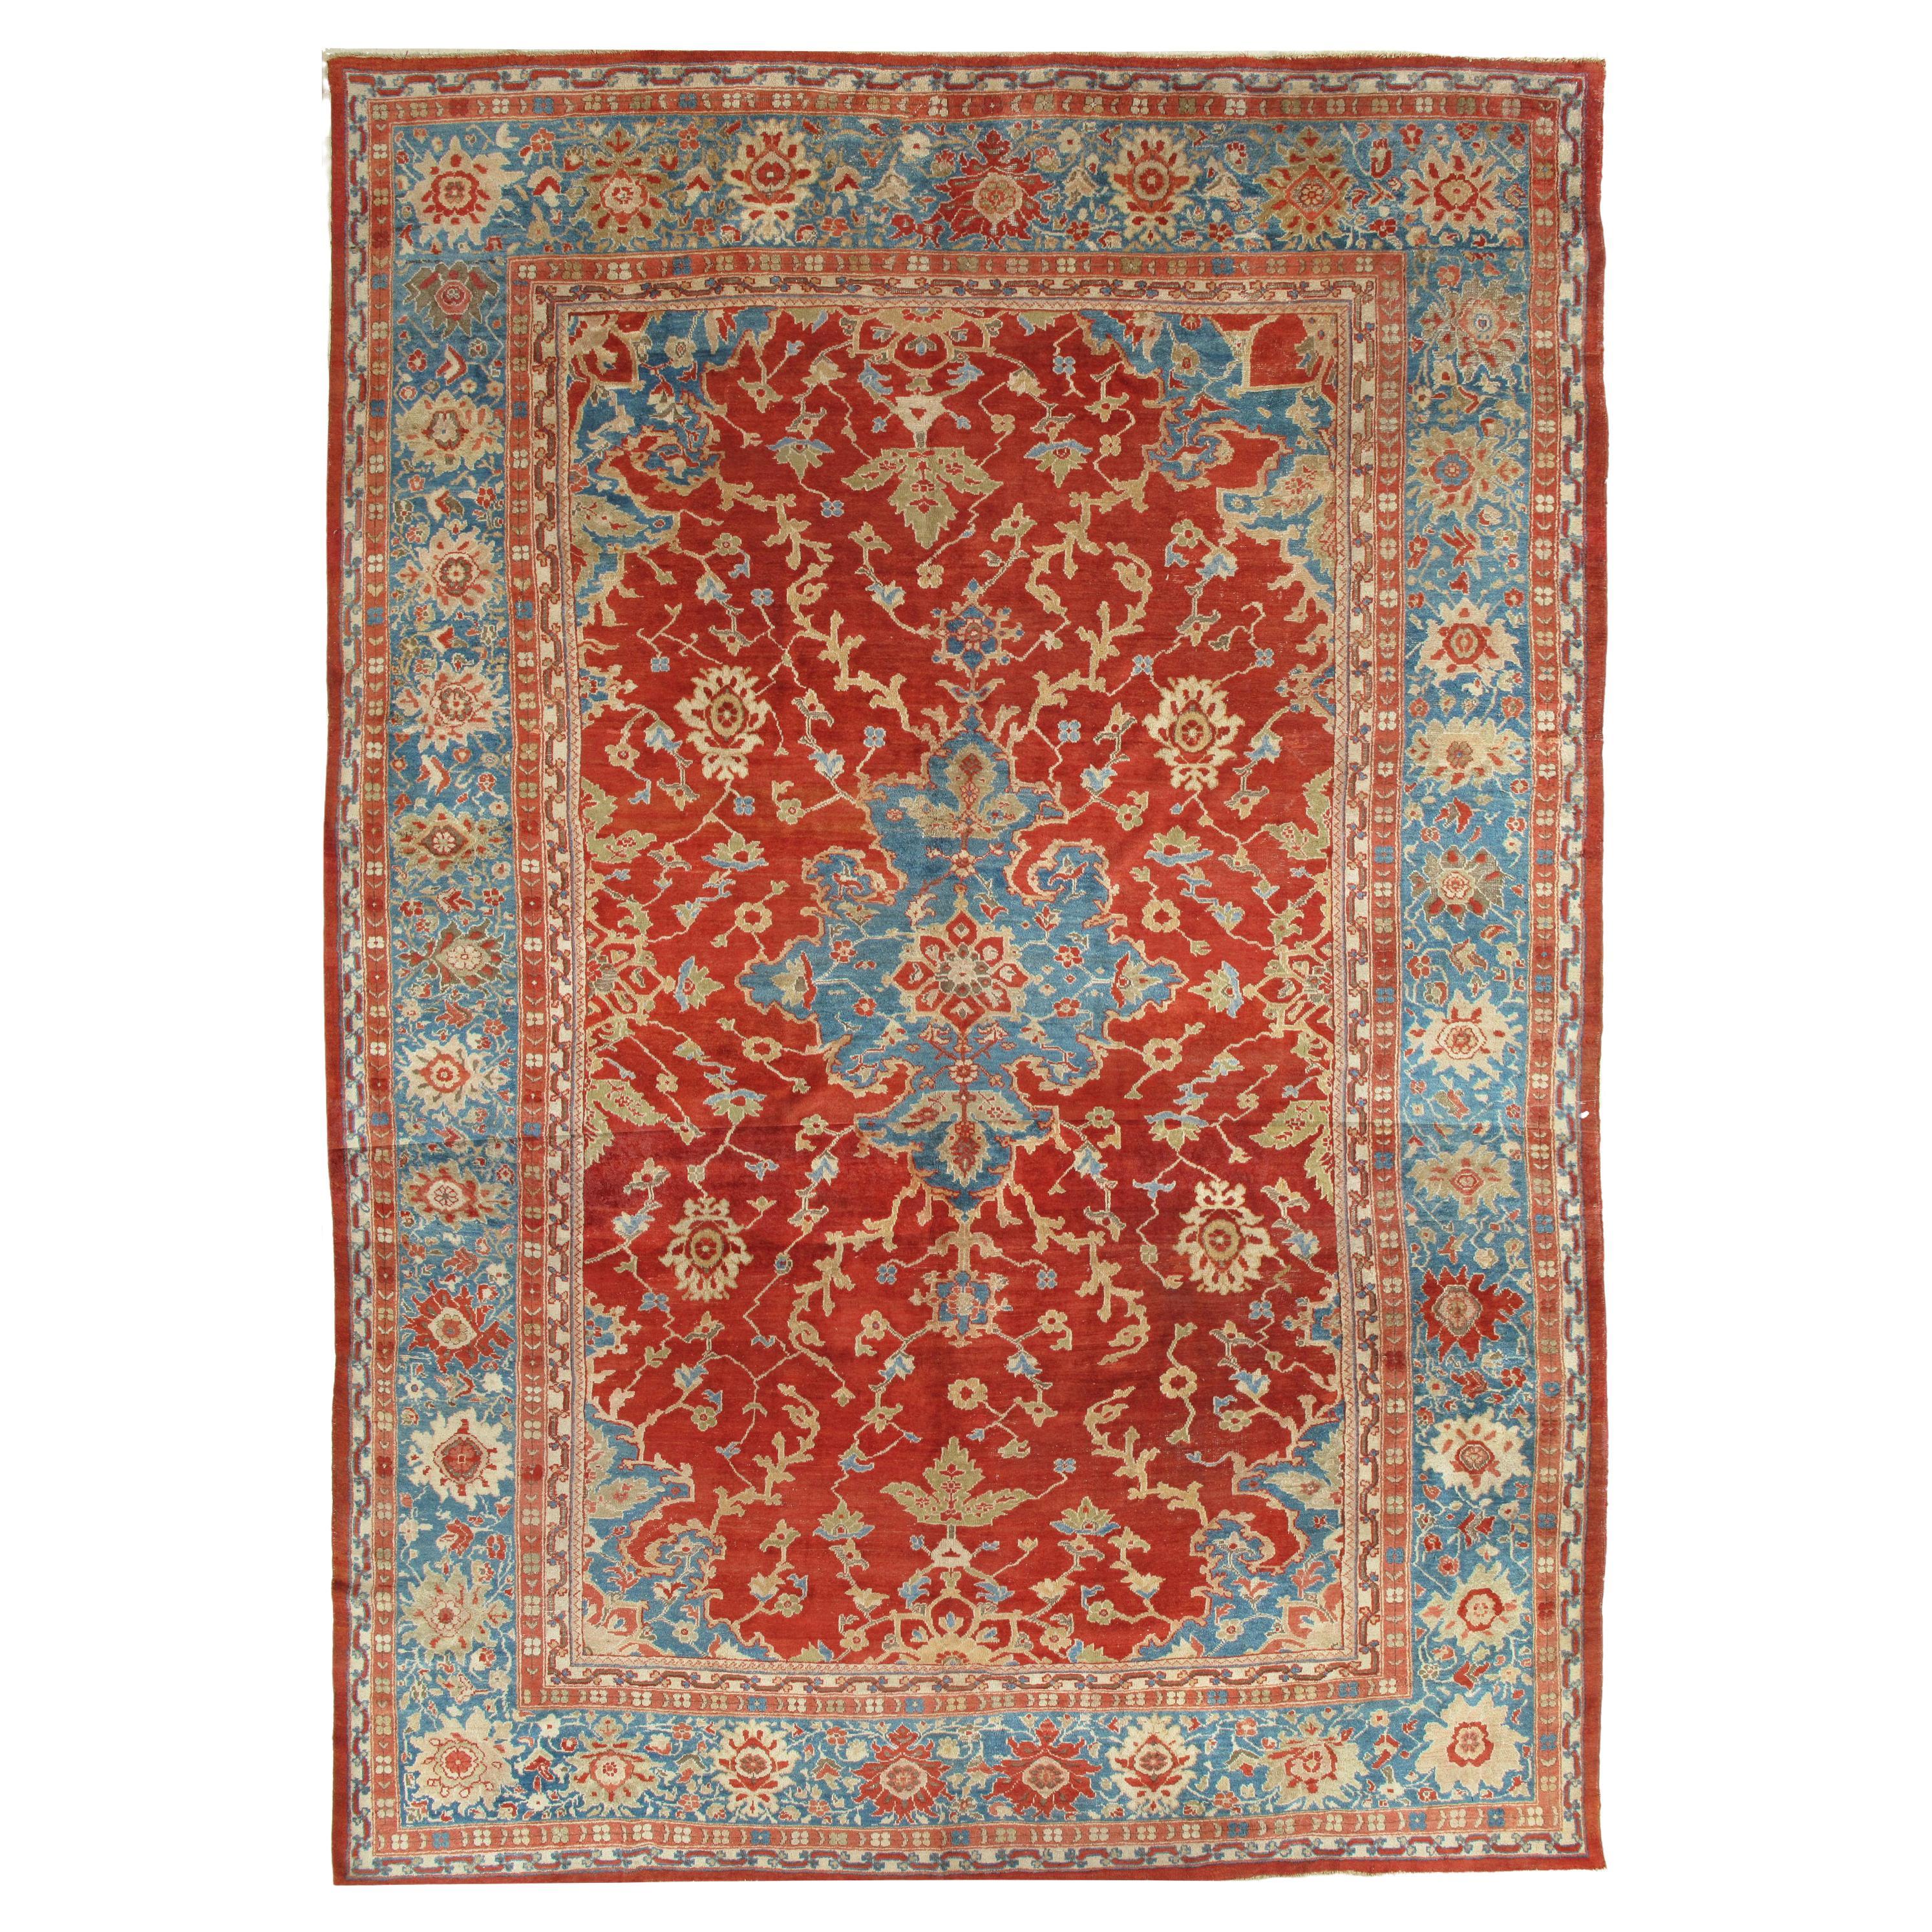 Tapis persan antique Sultanabad, tapis oriental fait à la main, rouge, bleu clair et or